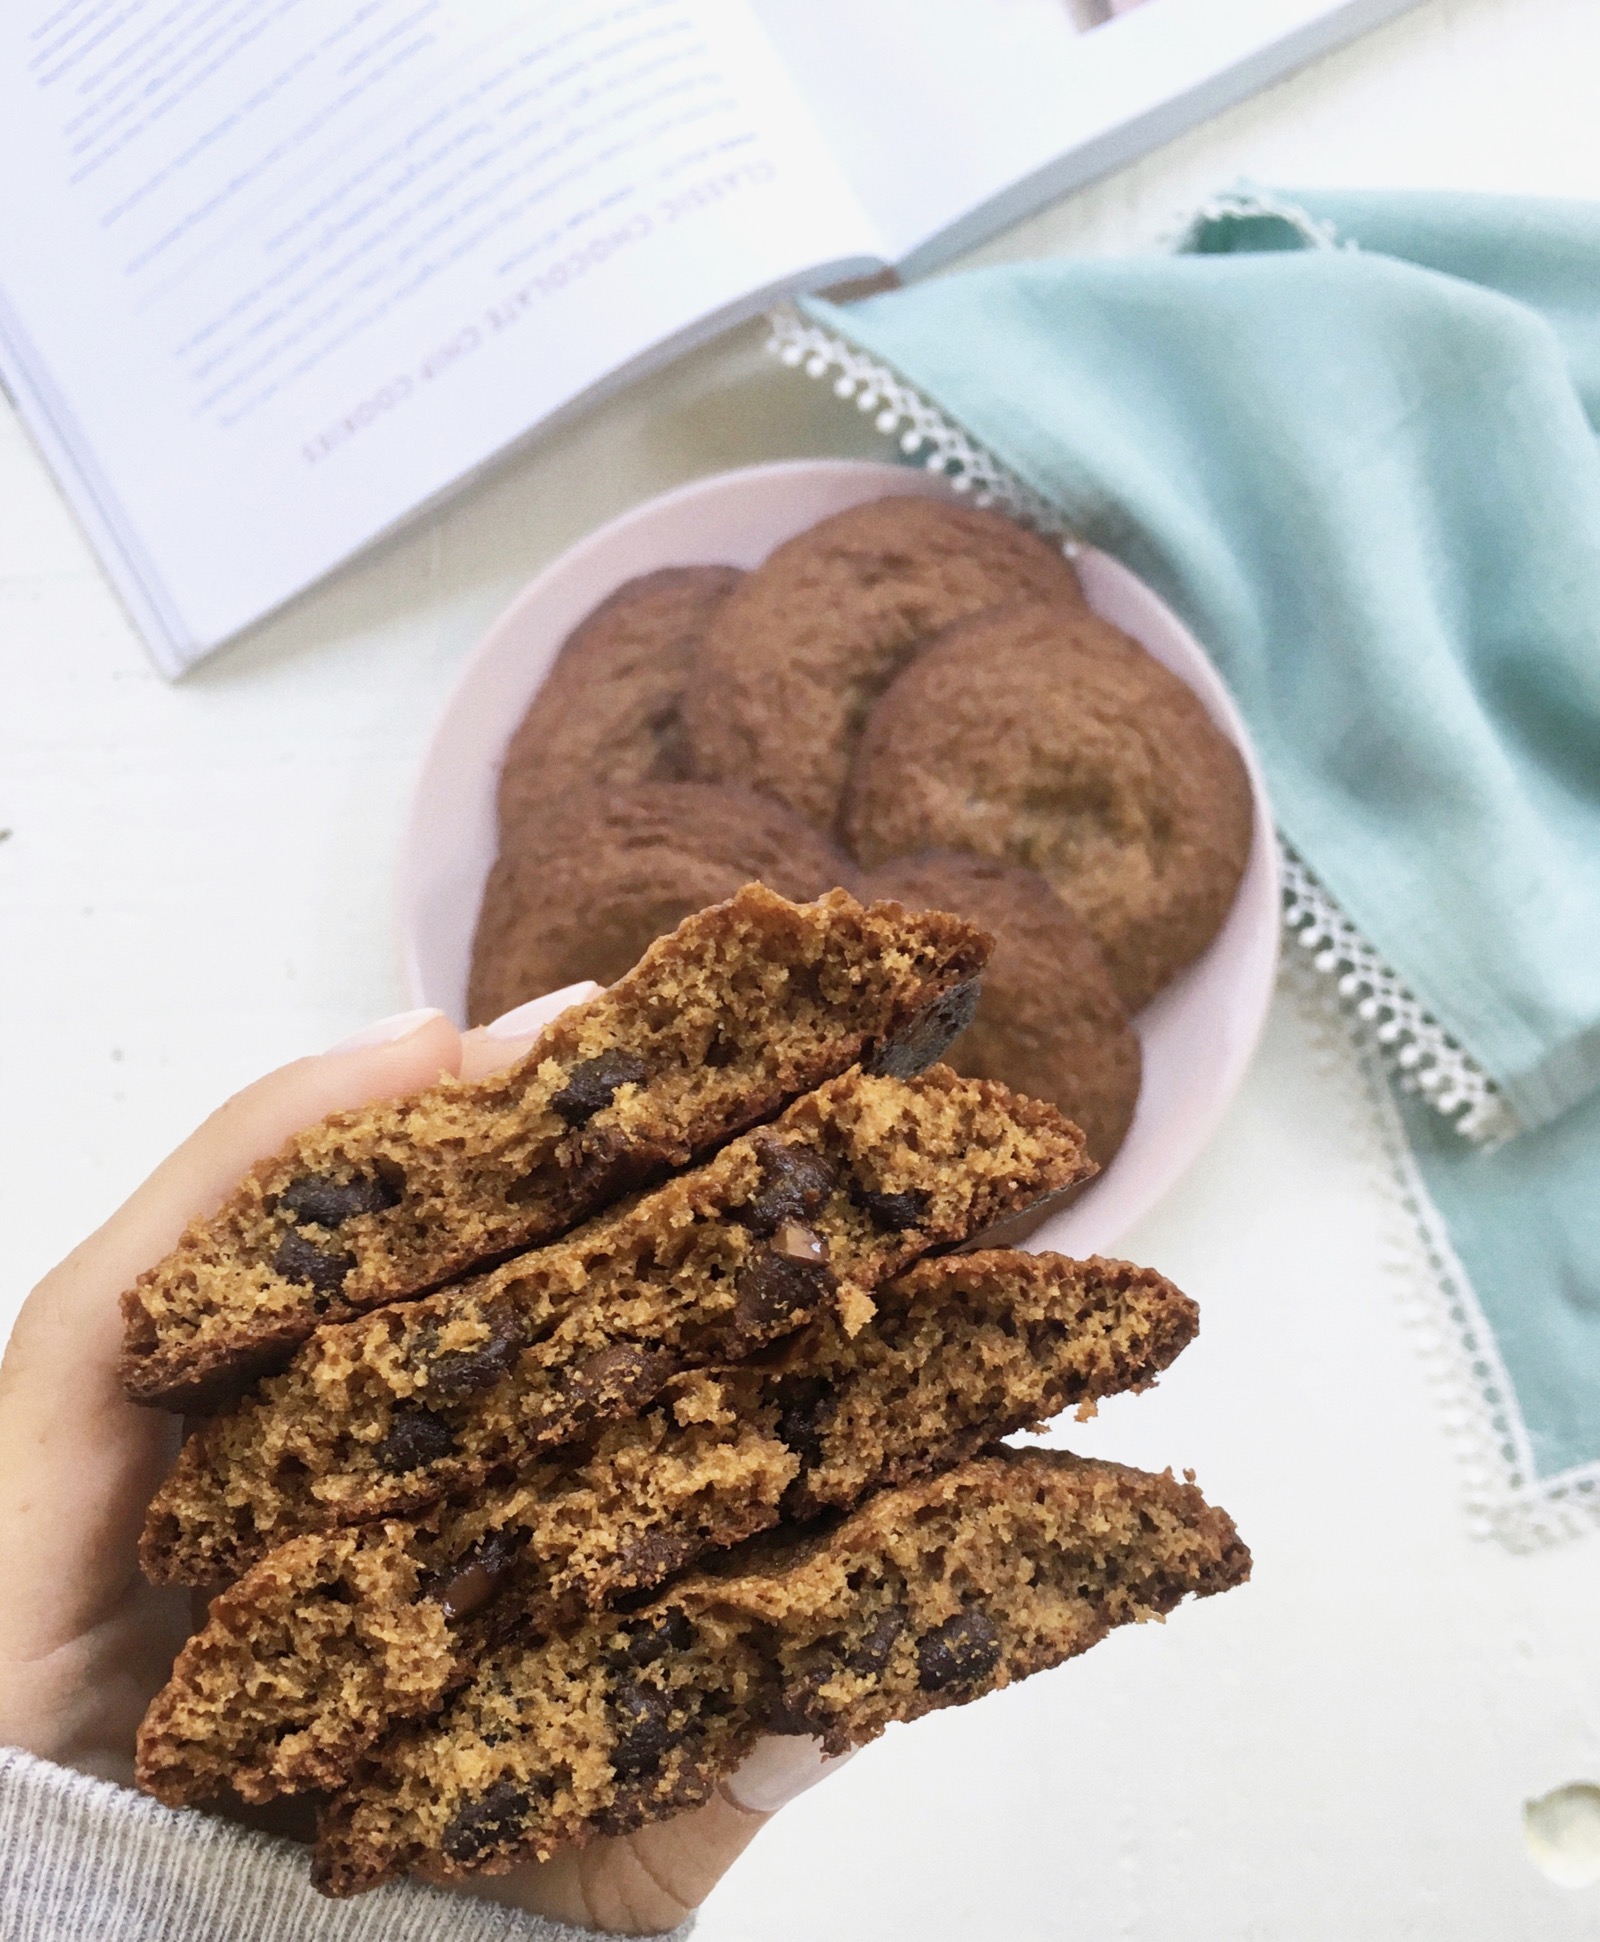 Kristin Cavallari's Secret Cookie Recipe